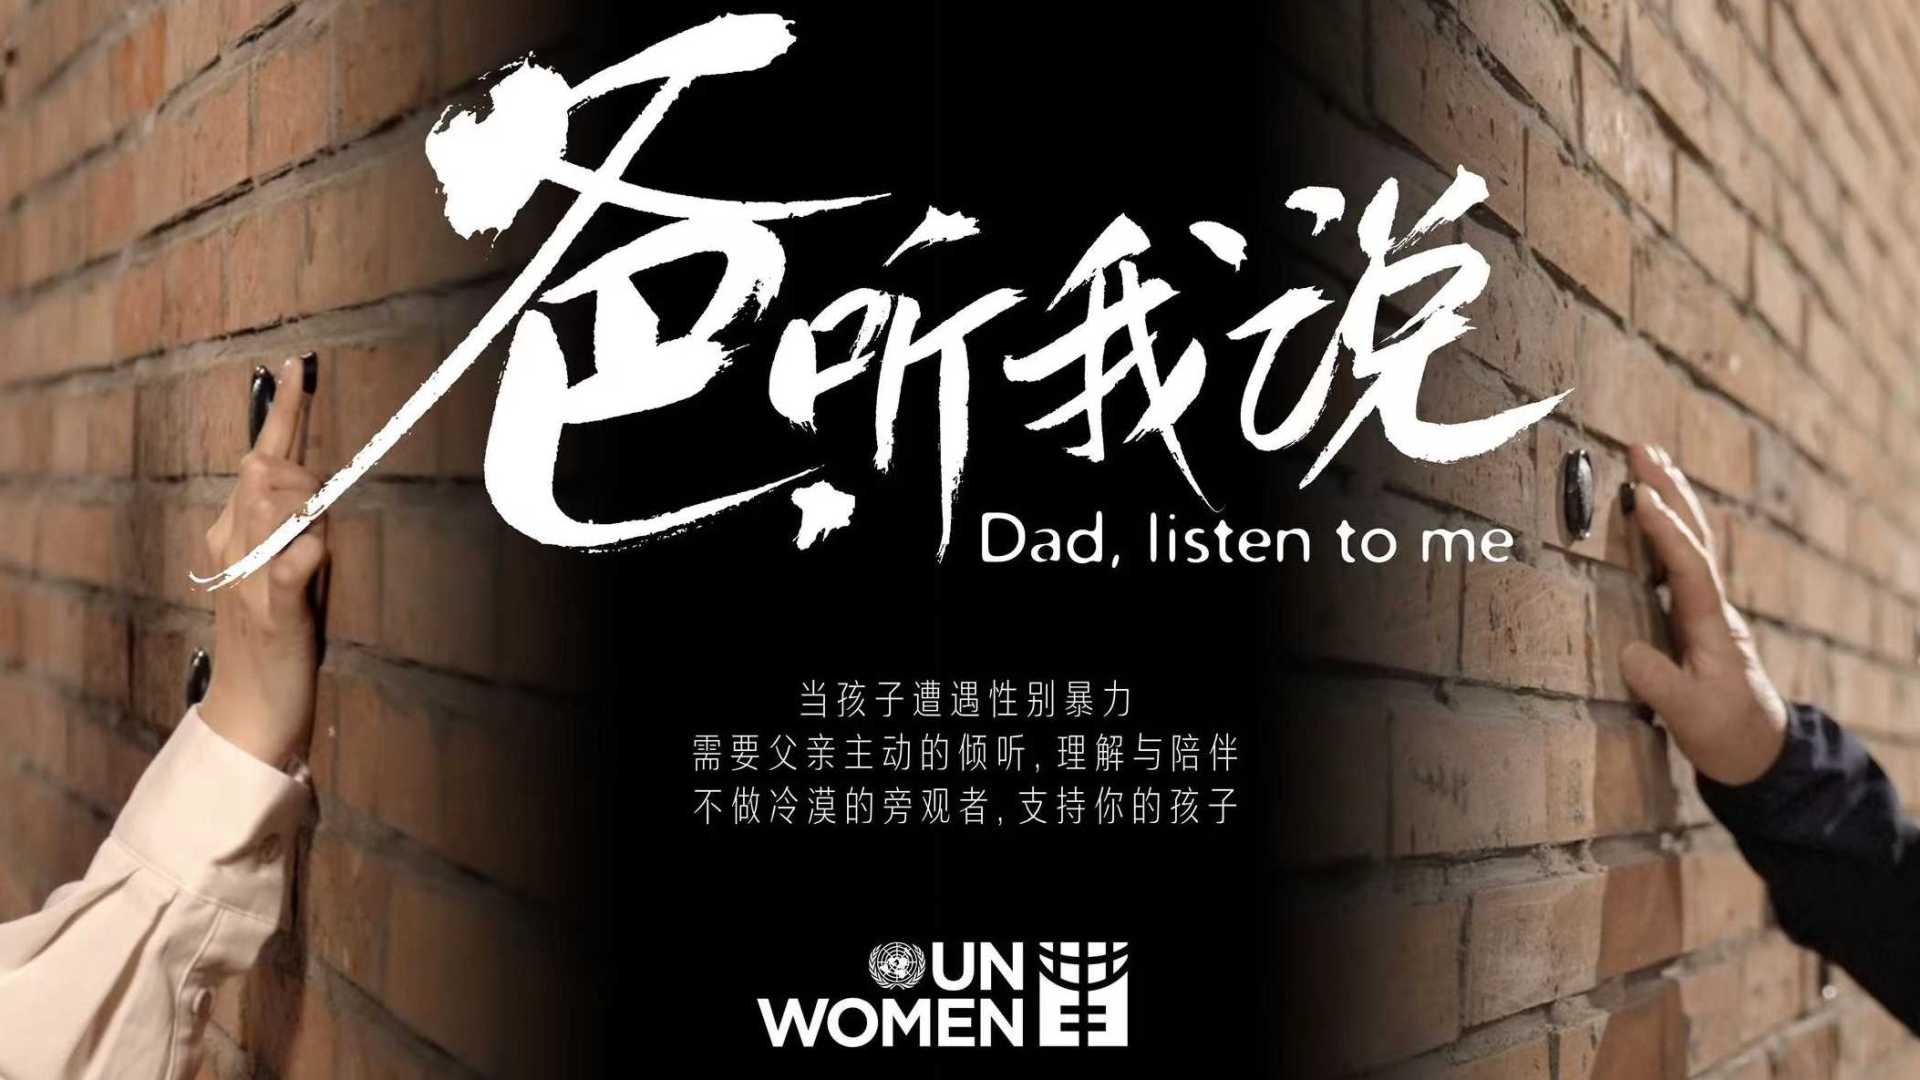 联合国妇女署推出父亲节原创主题视频《爸，听我说》